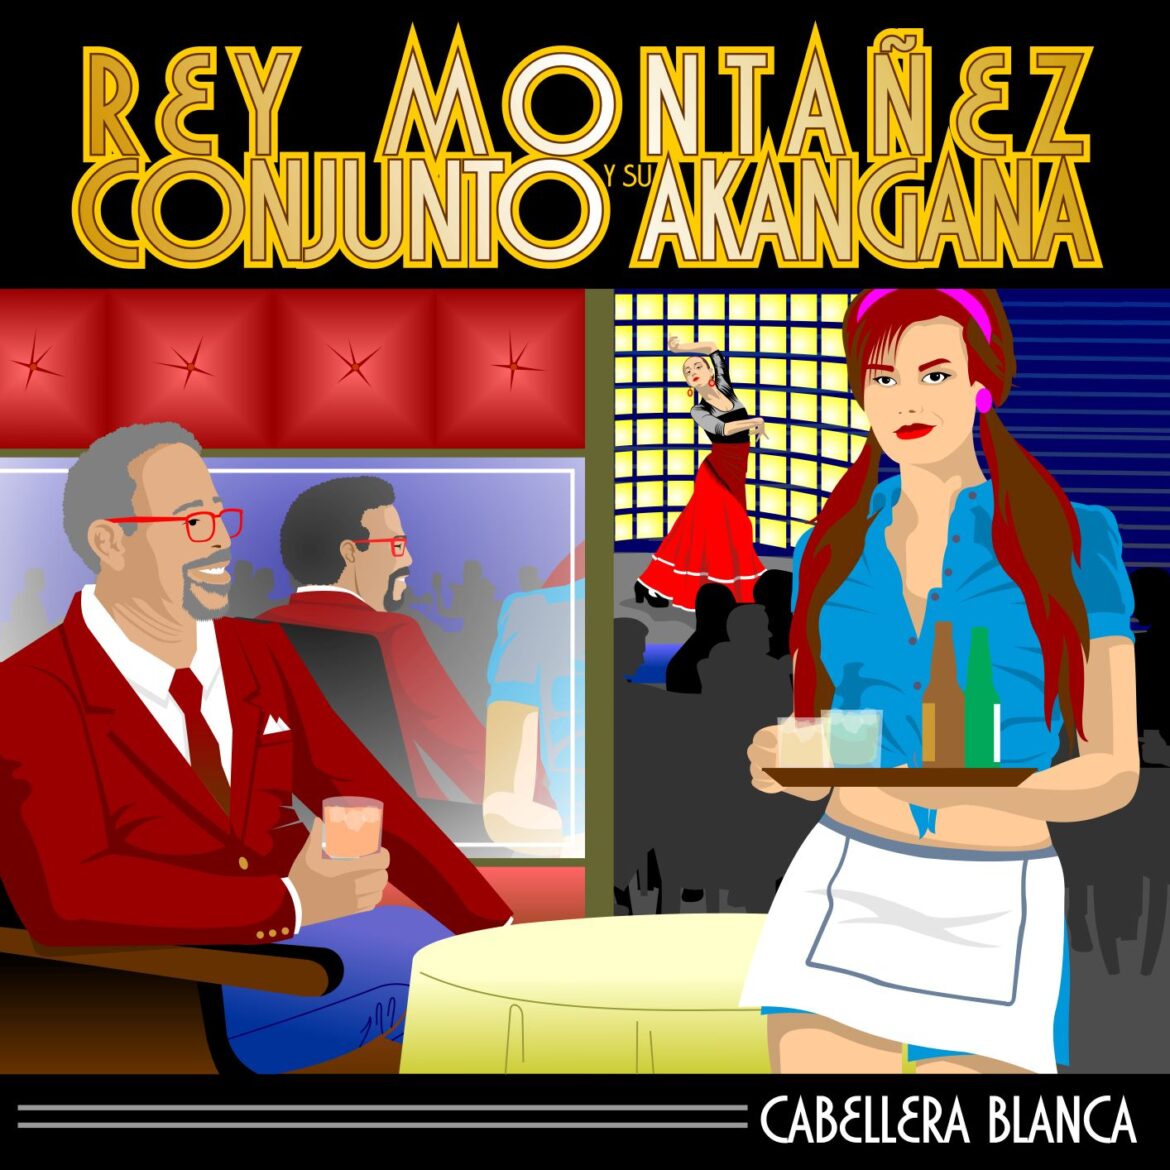 Rey Montañez y su Conjunto Akangana lanzan “Cabellera Blanca”